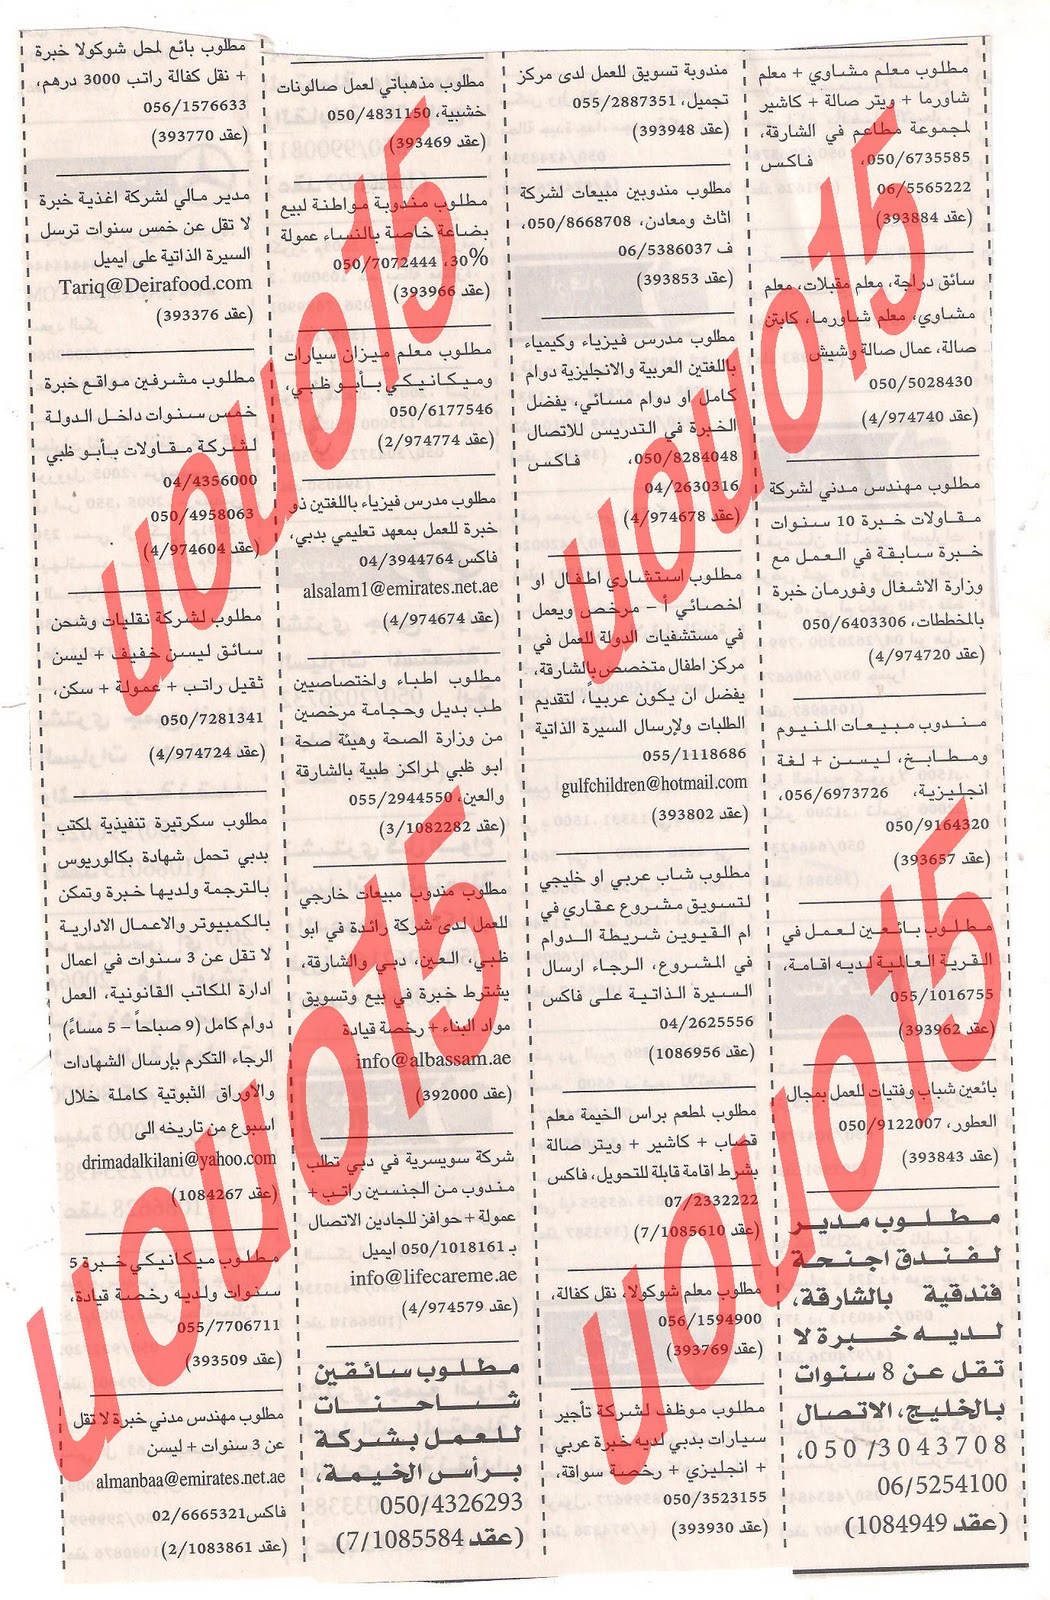 وظائف شاغرة من جريدة الخليج الخميس 29\12\2011  Picture+009